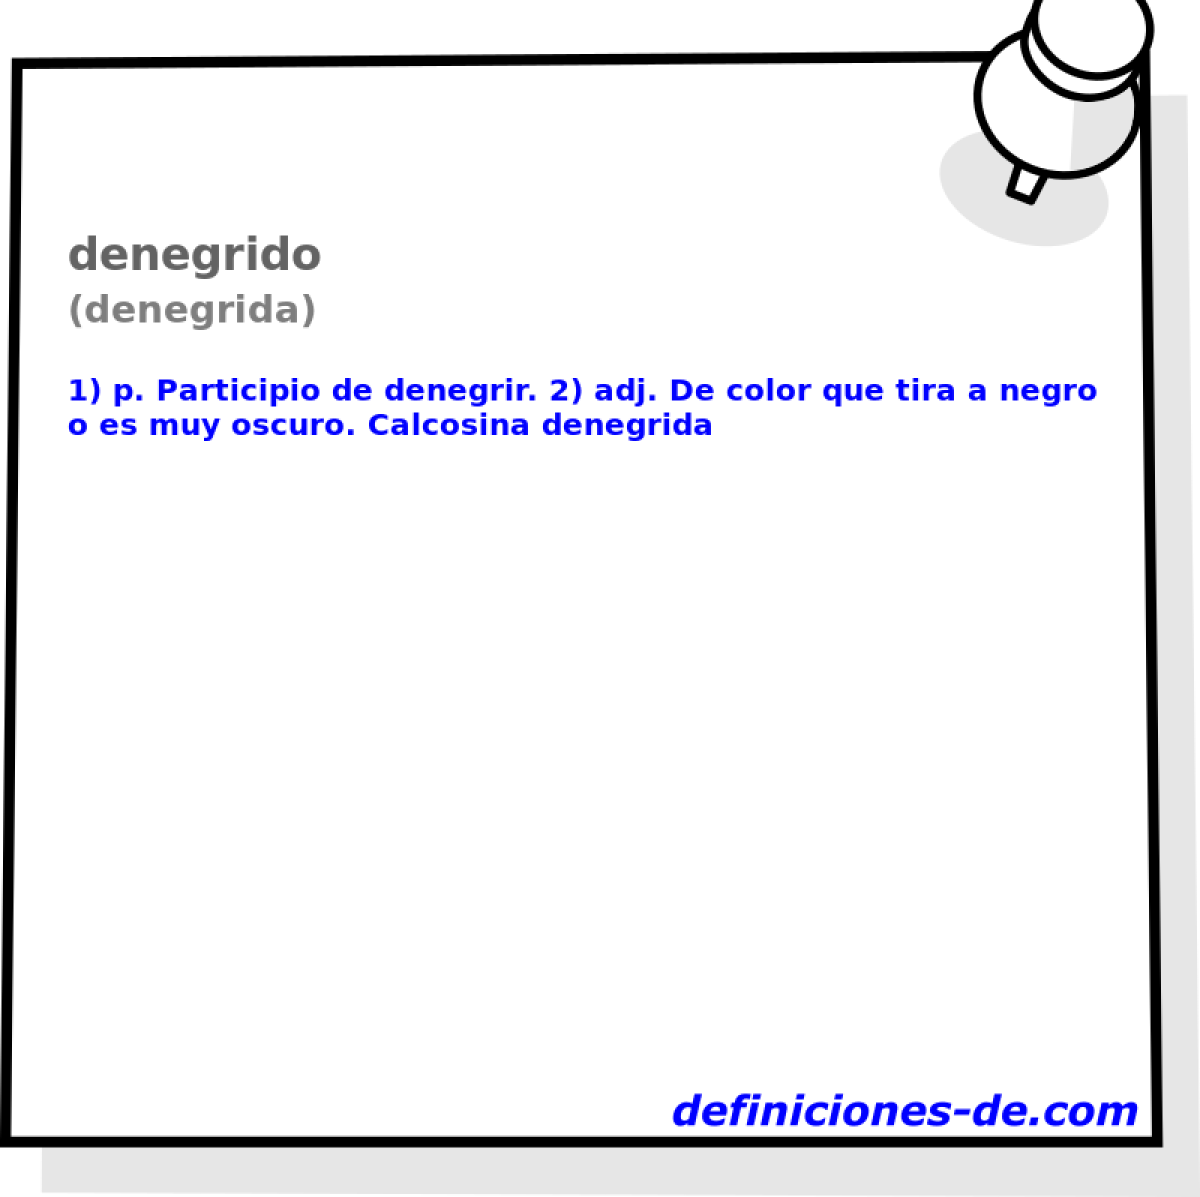 denegrido (denegrida)